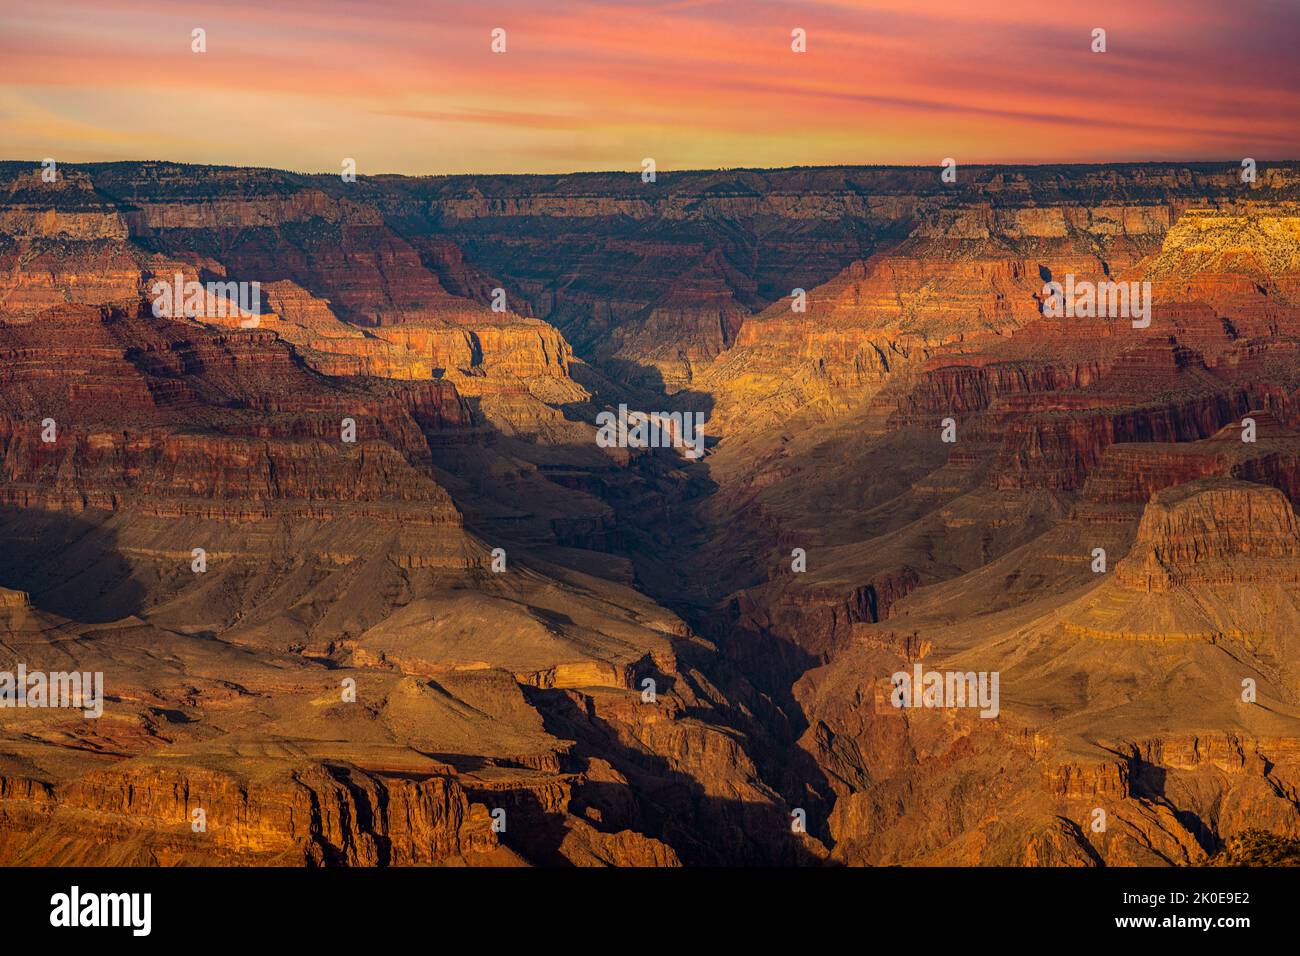 Une vue sur le parc national du Grand Canyon, à la fois magnifique et spectaculaire, pendant un coucher de soleil de moody, montre les détails complexes des crêtes et des formati Banque D'Images